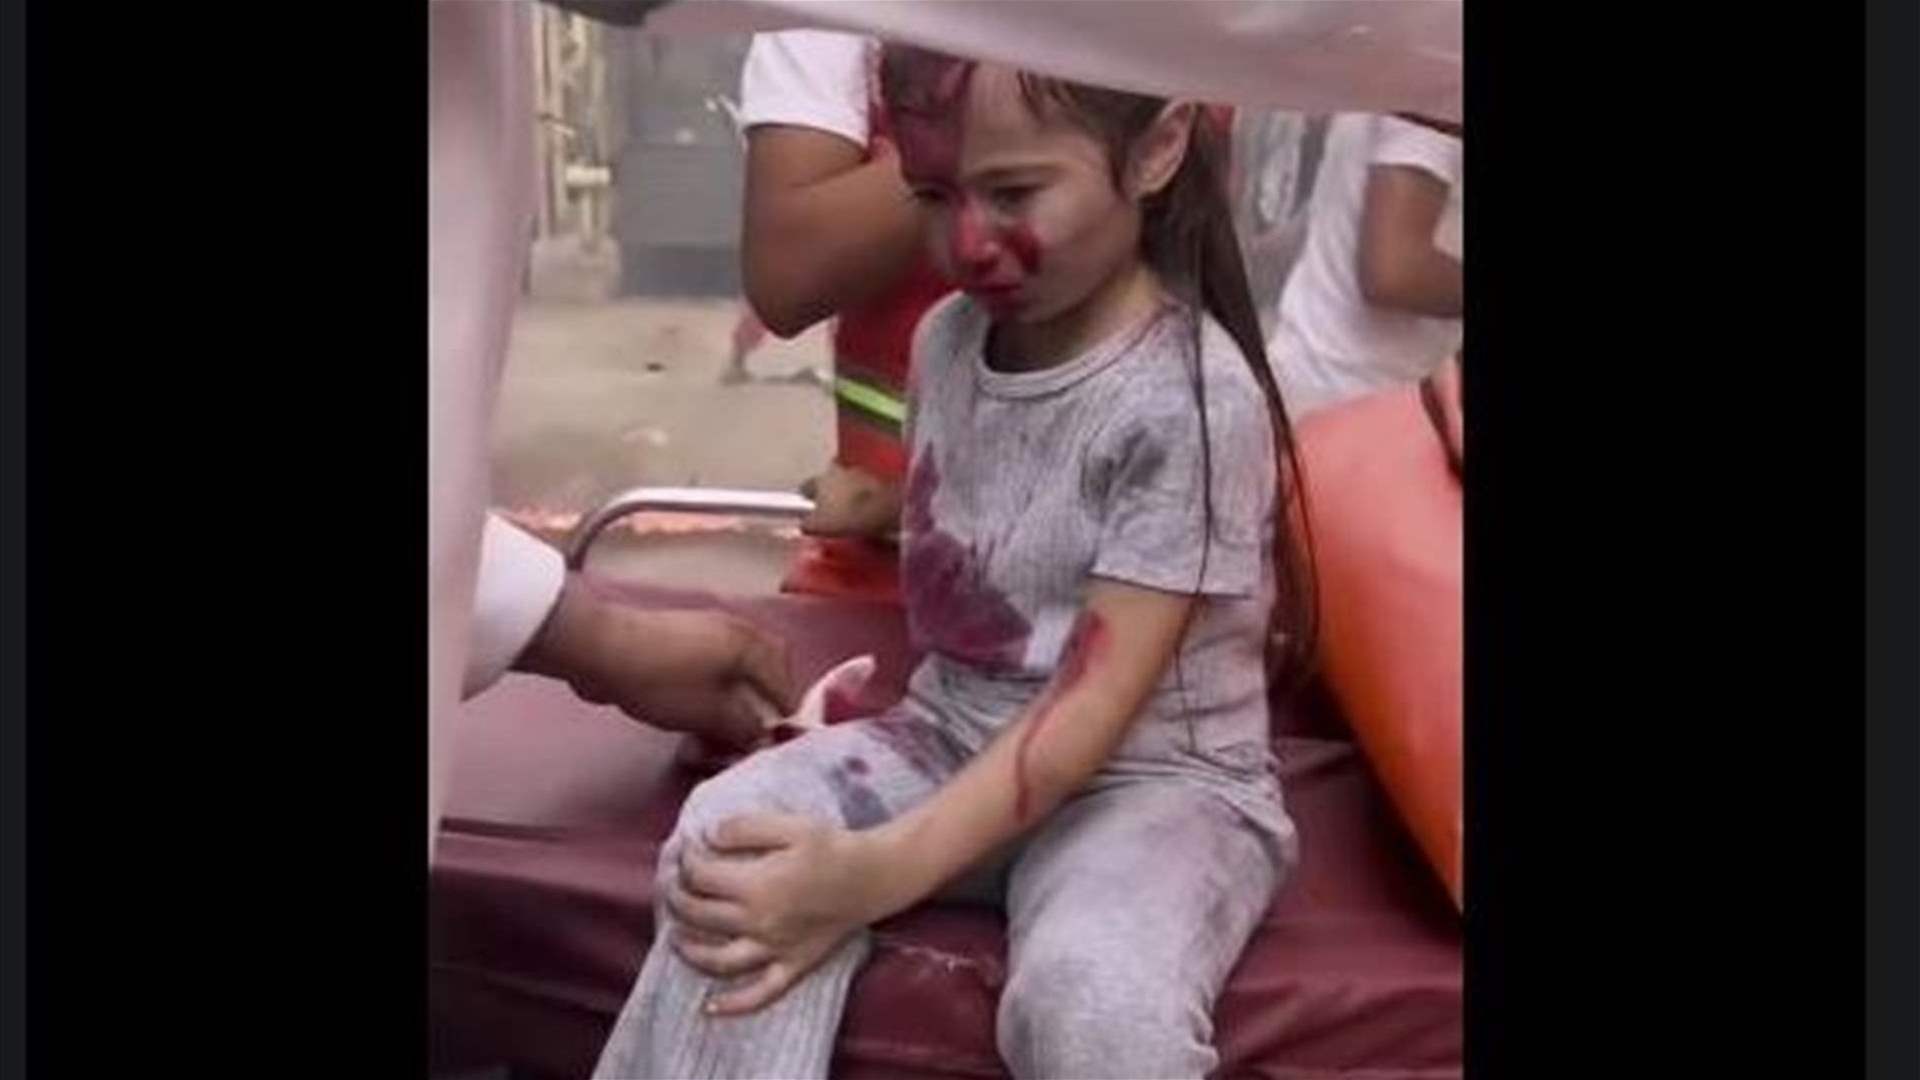  تصوير فيلم لبناني... الفلسطينيون لم يتظاهروا في هذا الفيديو بإصابة طفلة